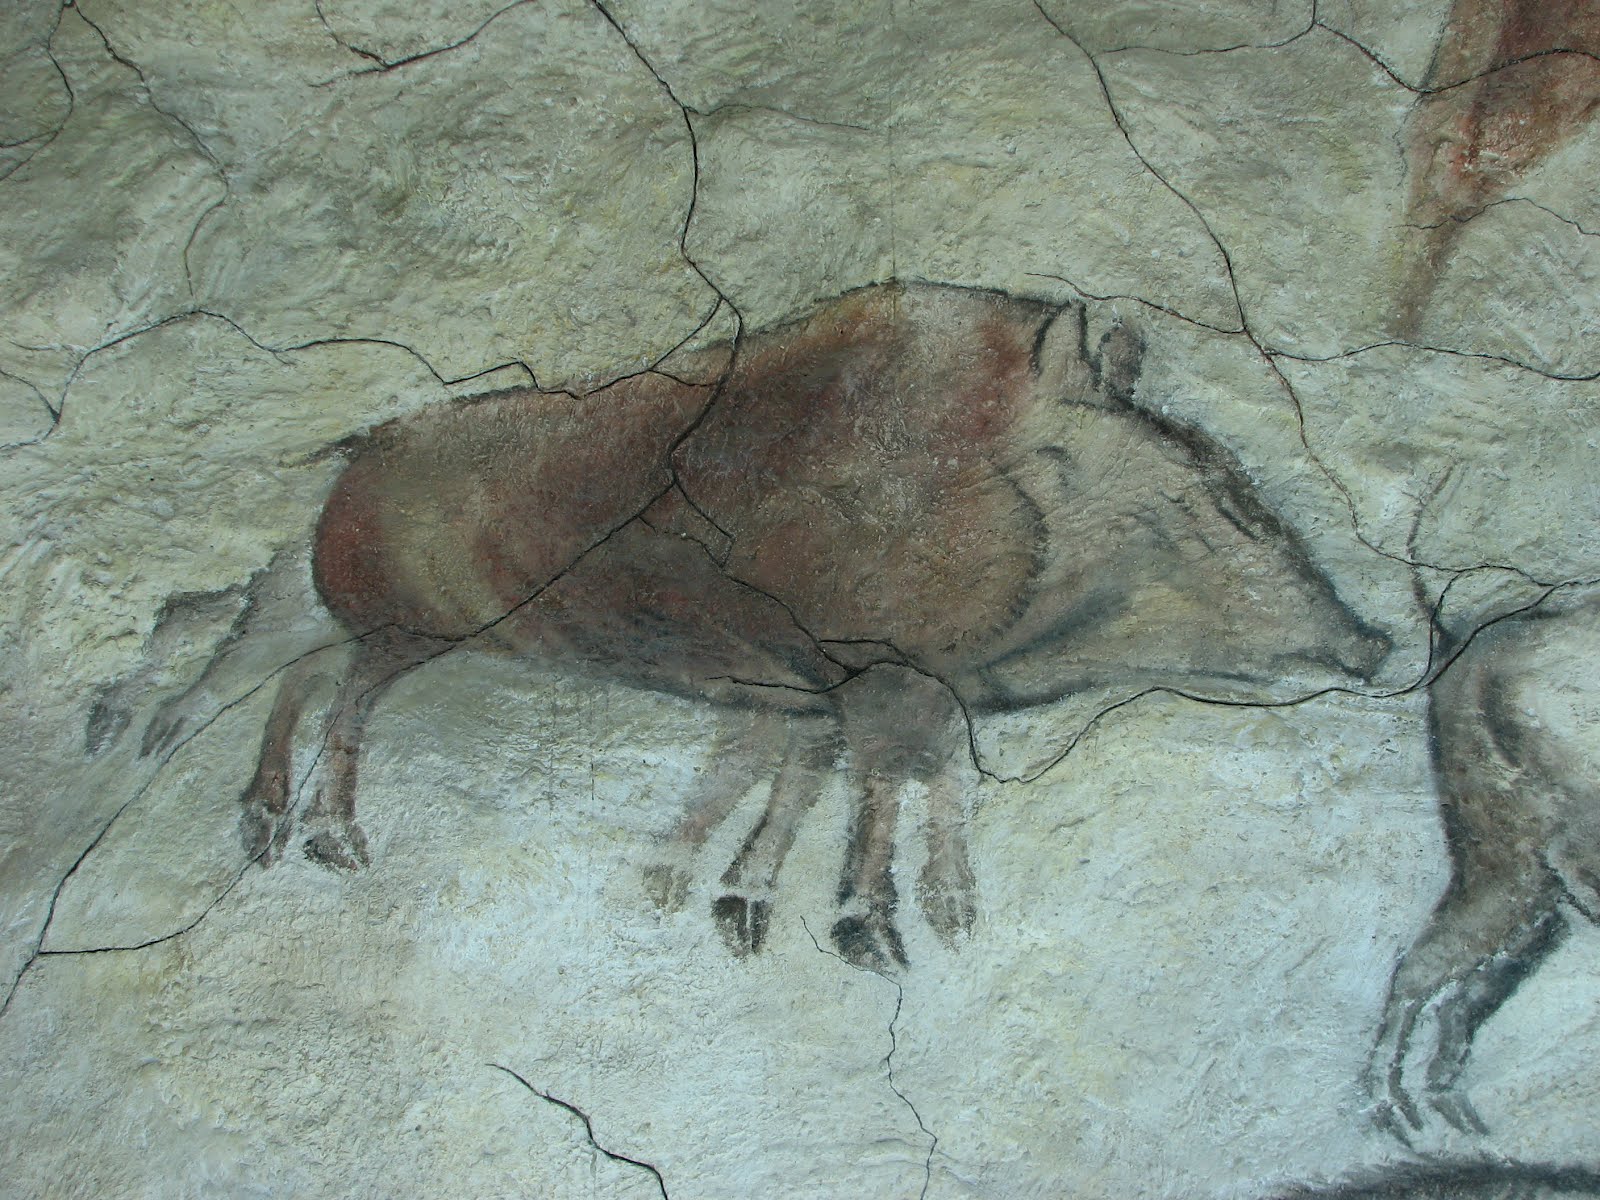 porc senglar amb 8 potes a les pintures rupestres d'altamira